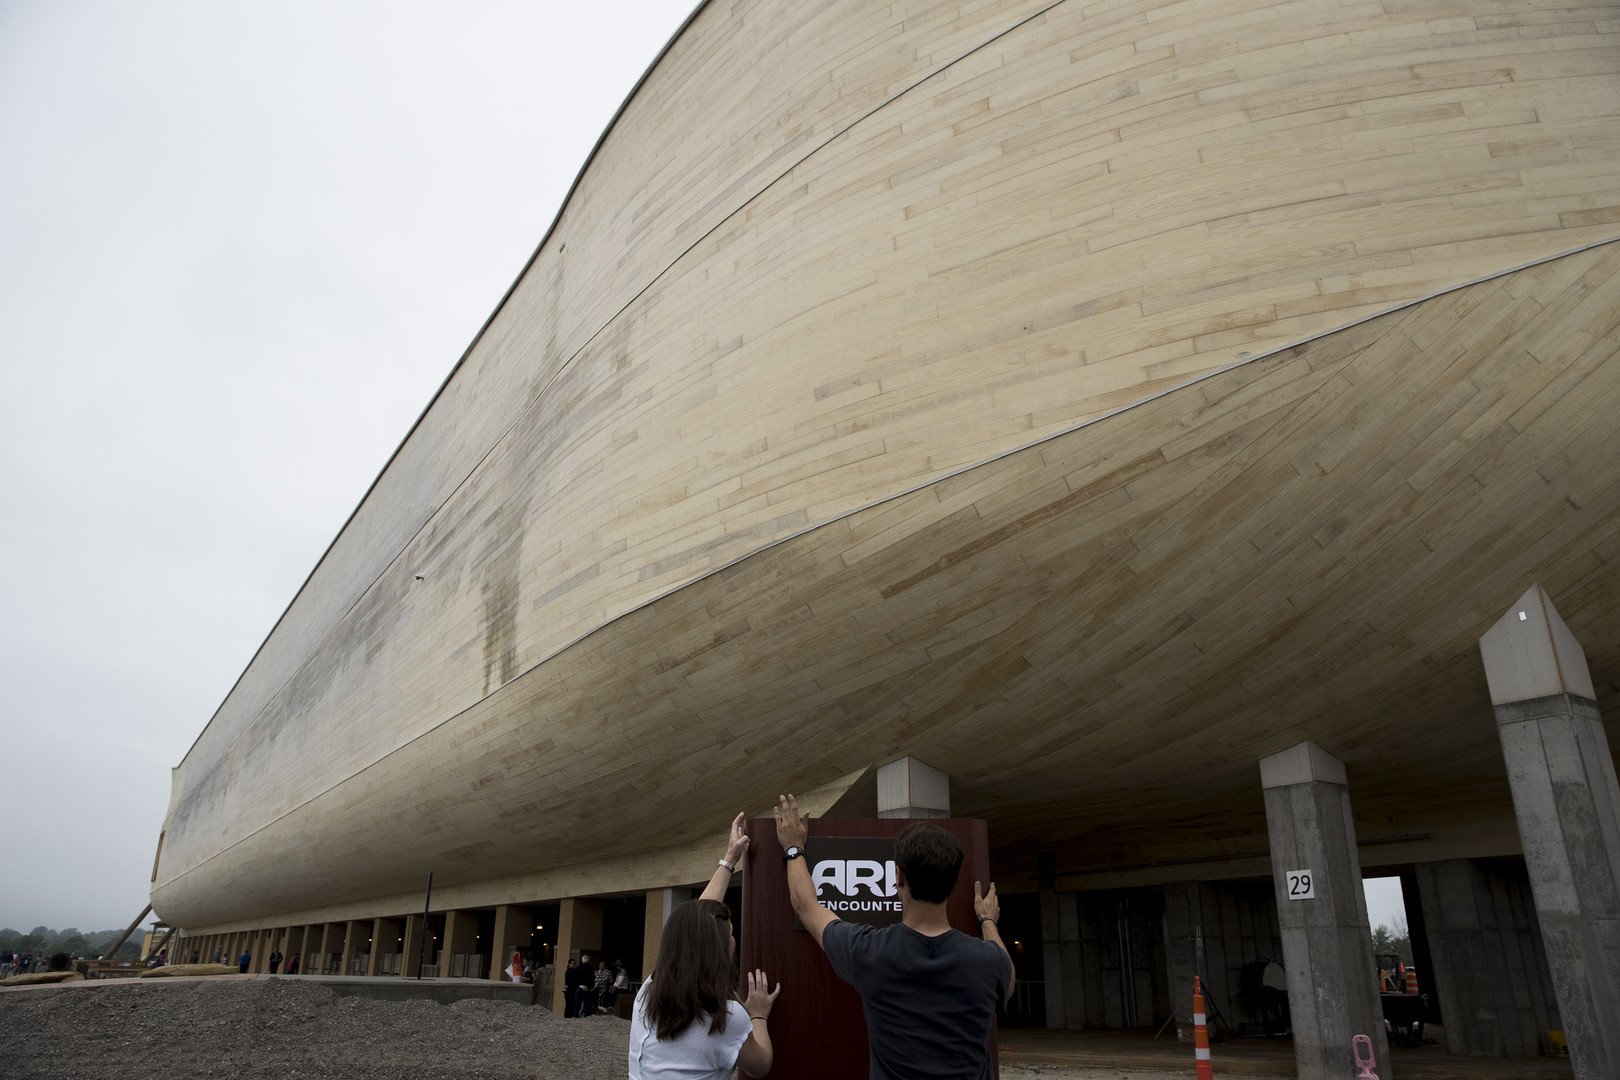 سفينة نوح تظهر في أمريكا! (صور)